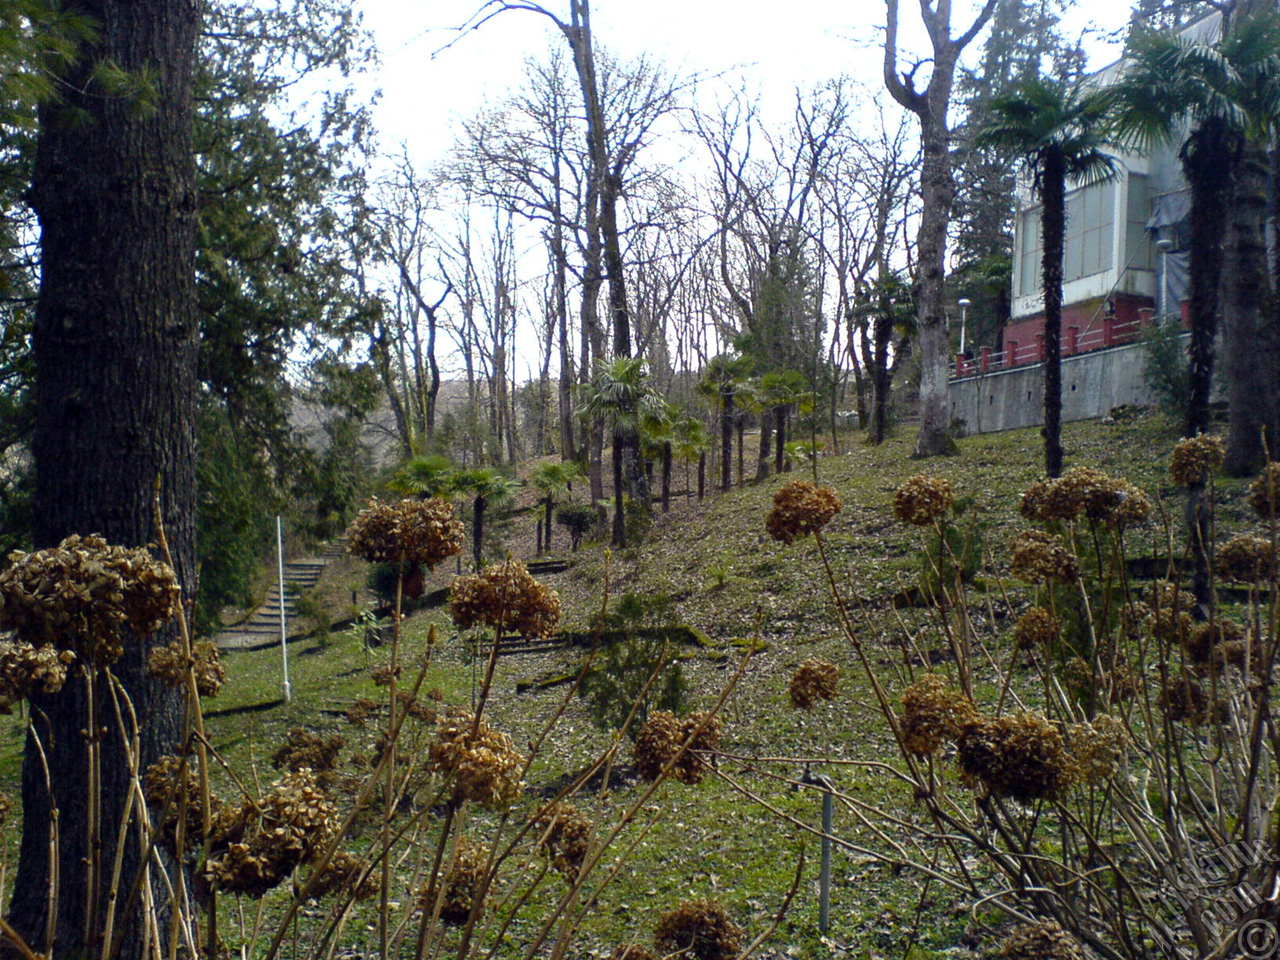 Deadhead Hydrangea -Hortensia- flowers in winter.
